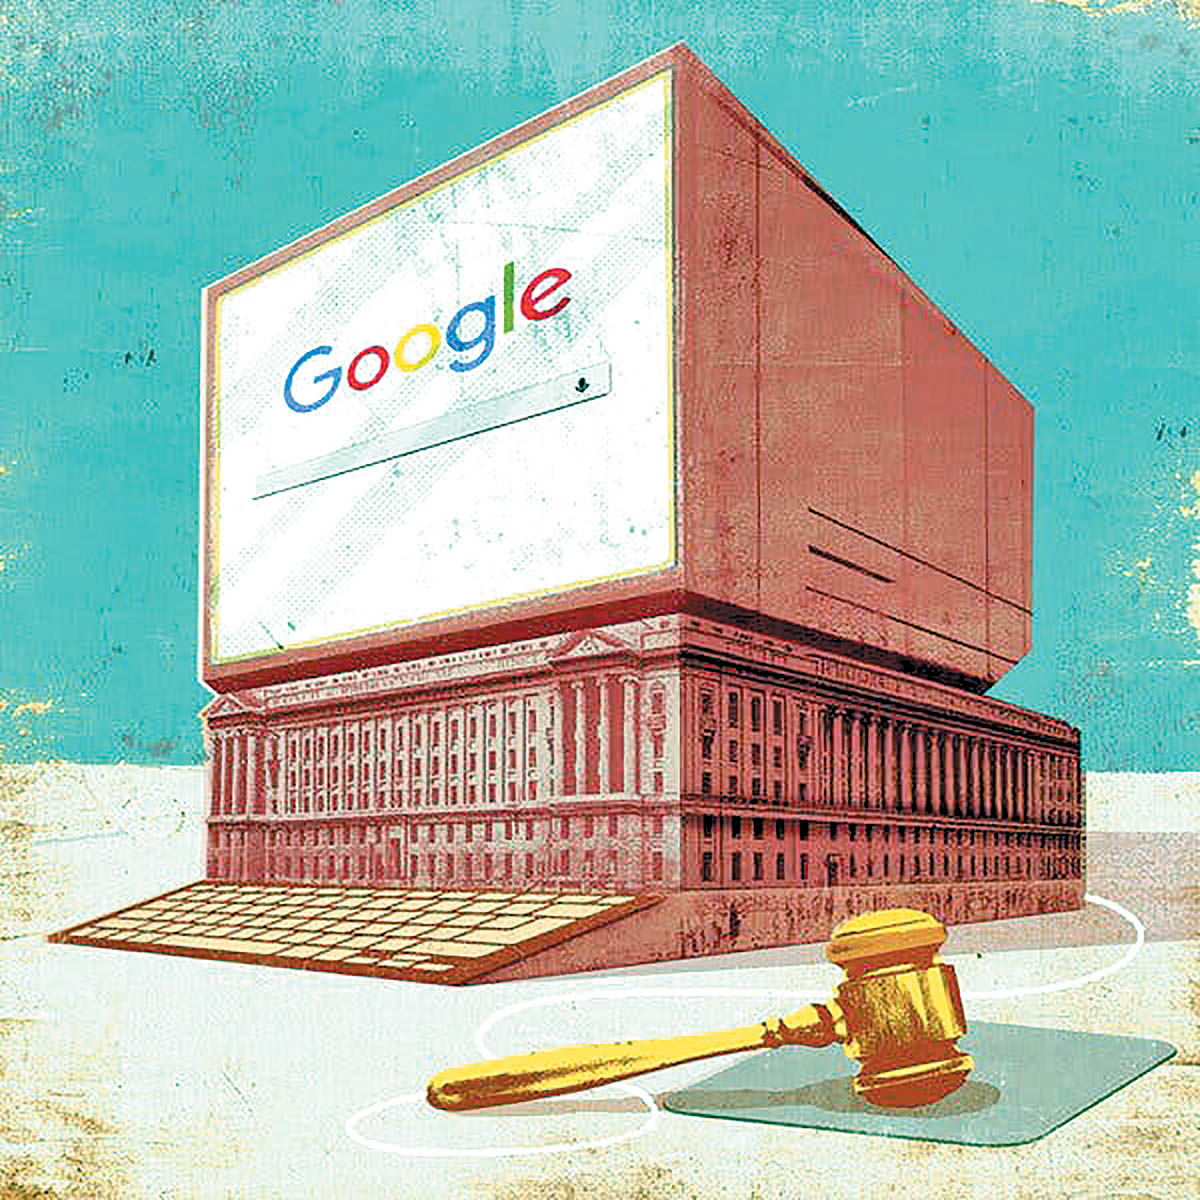 دادگاه گوگل برای شکستن انحصارطلبی این شرکت برگزار خواهد شد